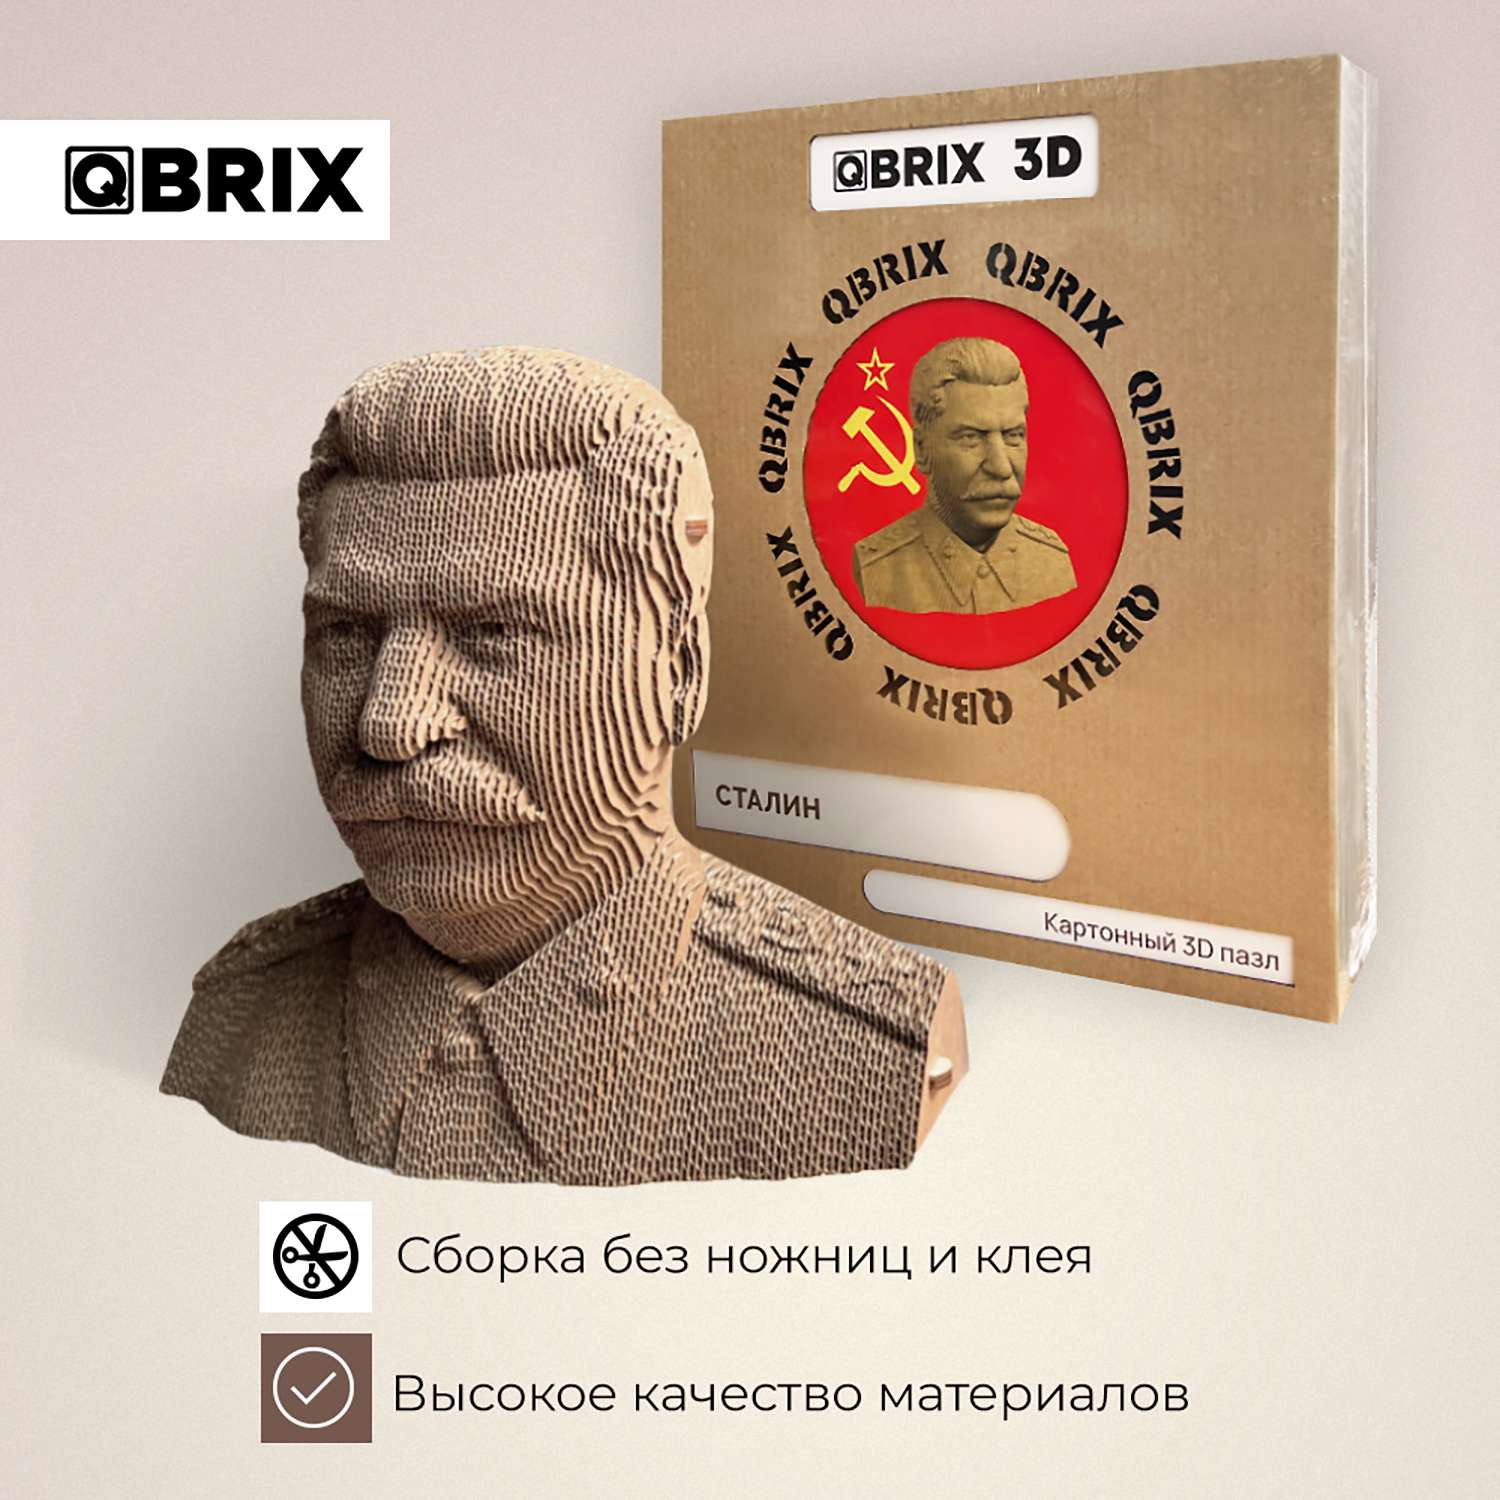 Конструктор QBRIX 3D картонный Сталин 20033 20033 - фото 4